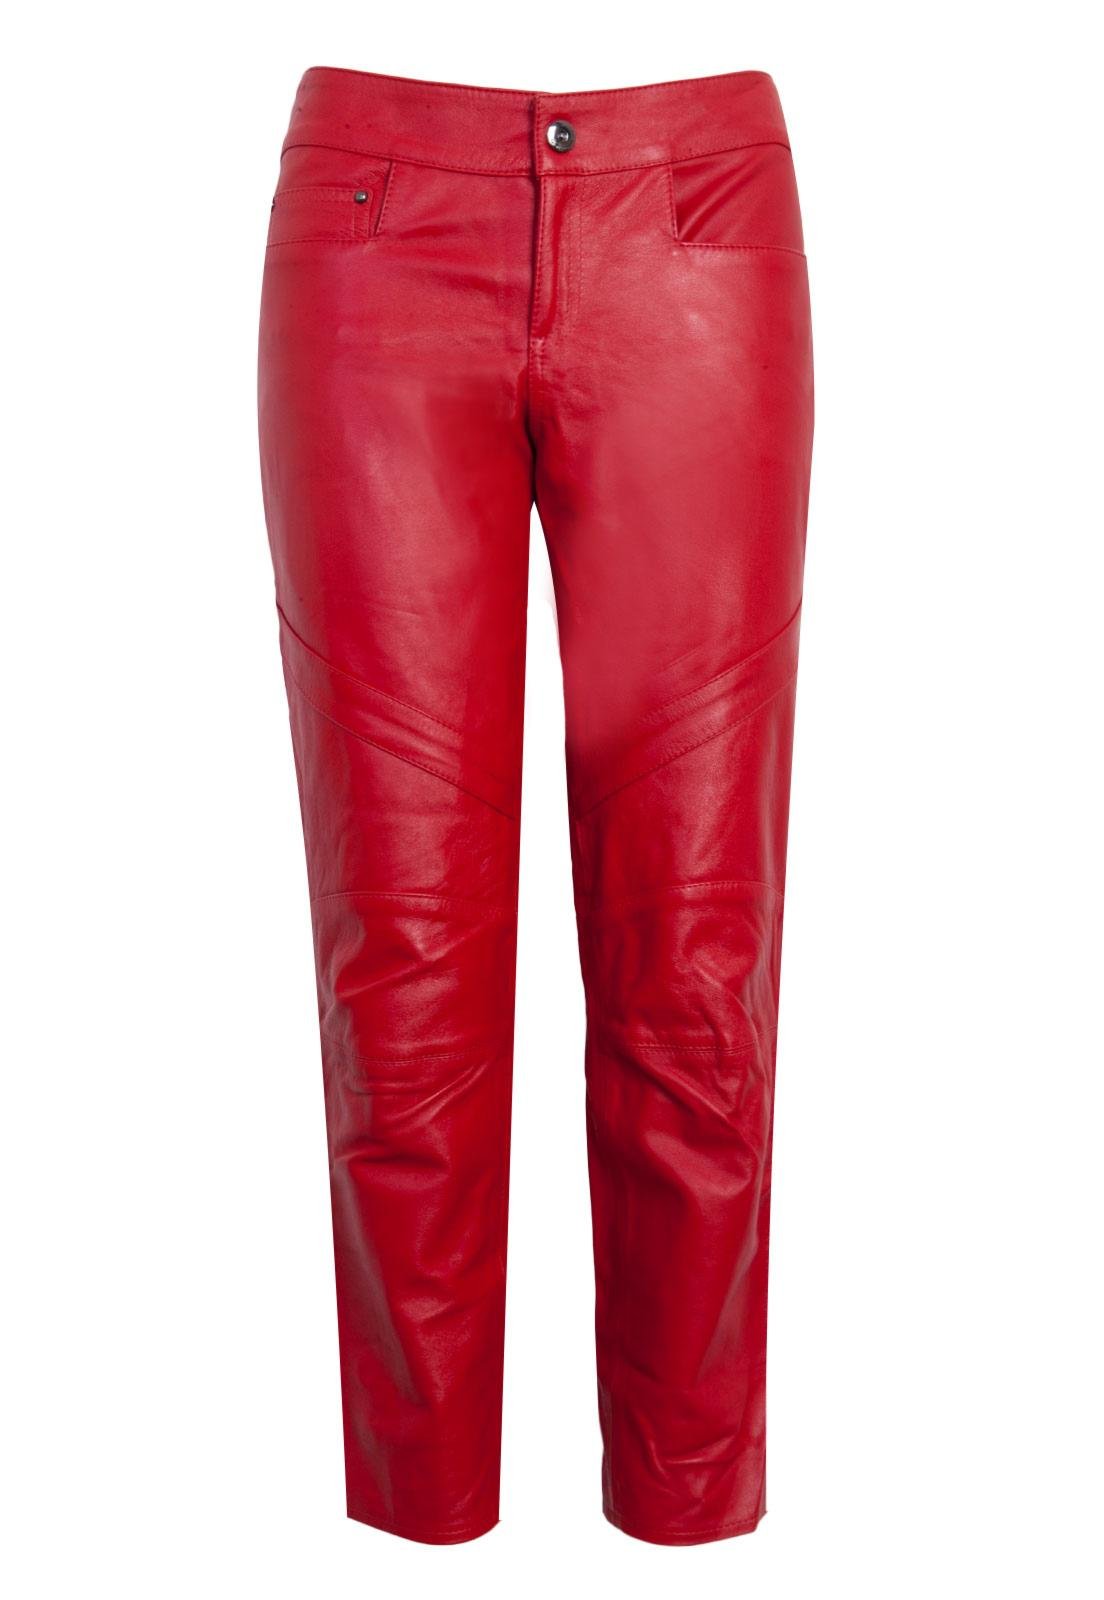 calça de couro masculina vermelha